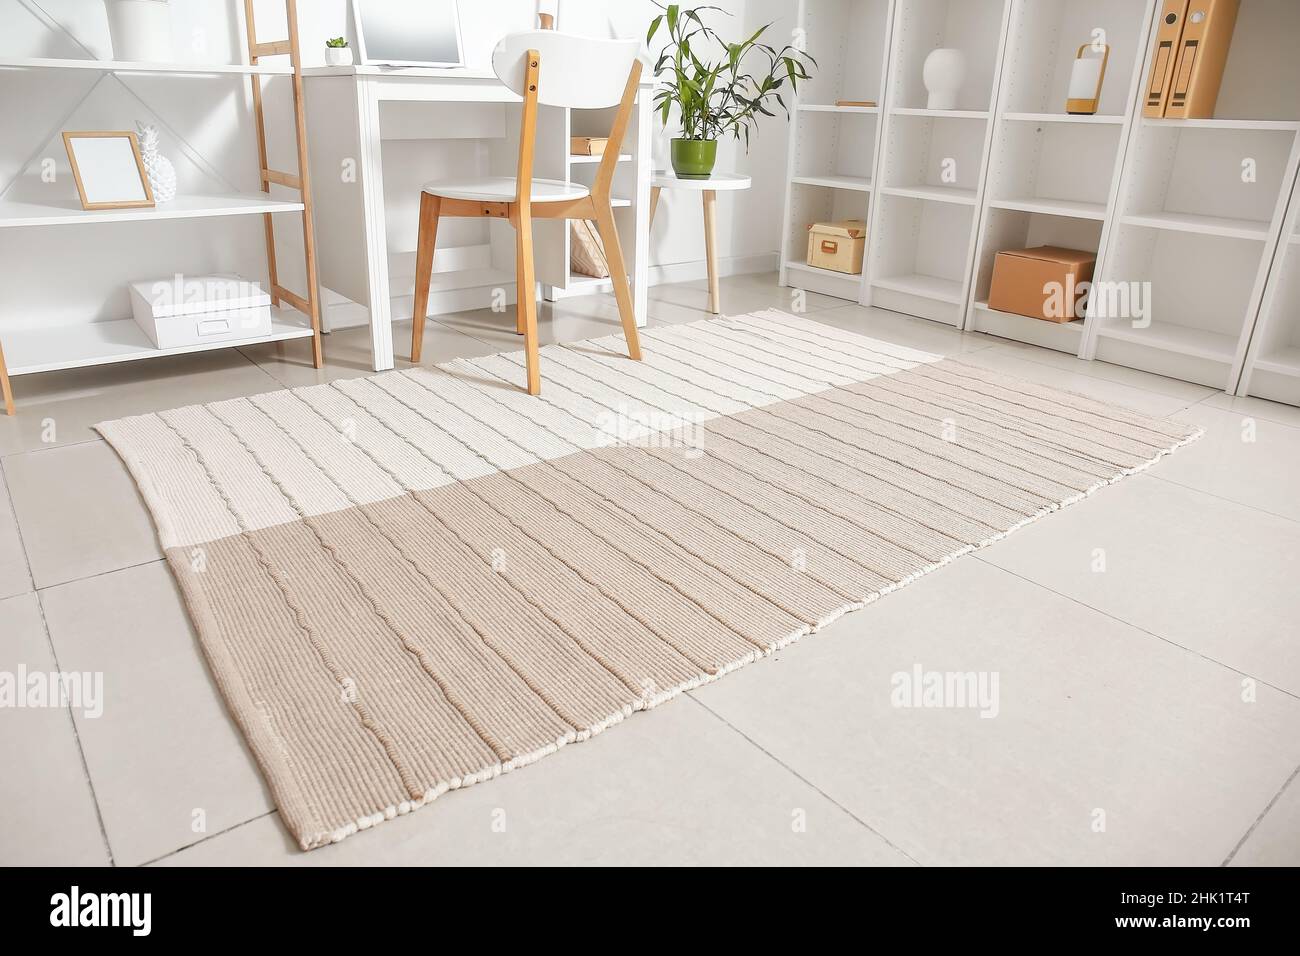 Moquette su pavimento piastrellato in camera luminosa Foto stock - Alamy